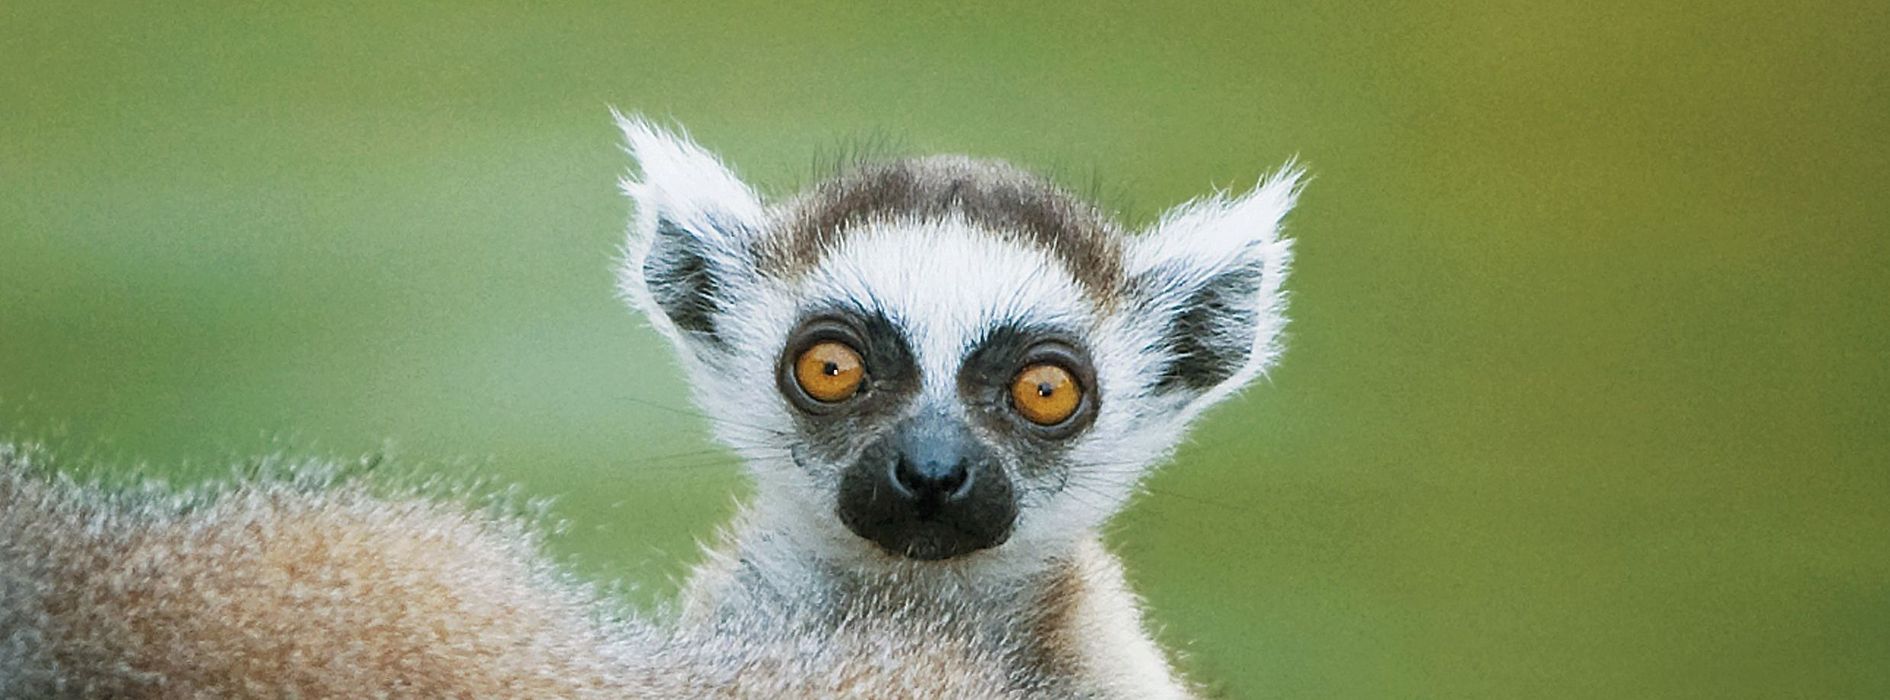 Mały lemur z wielkimi oczami